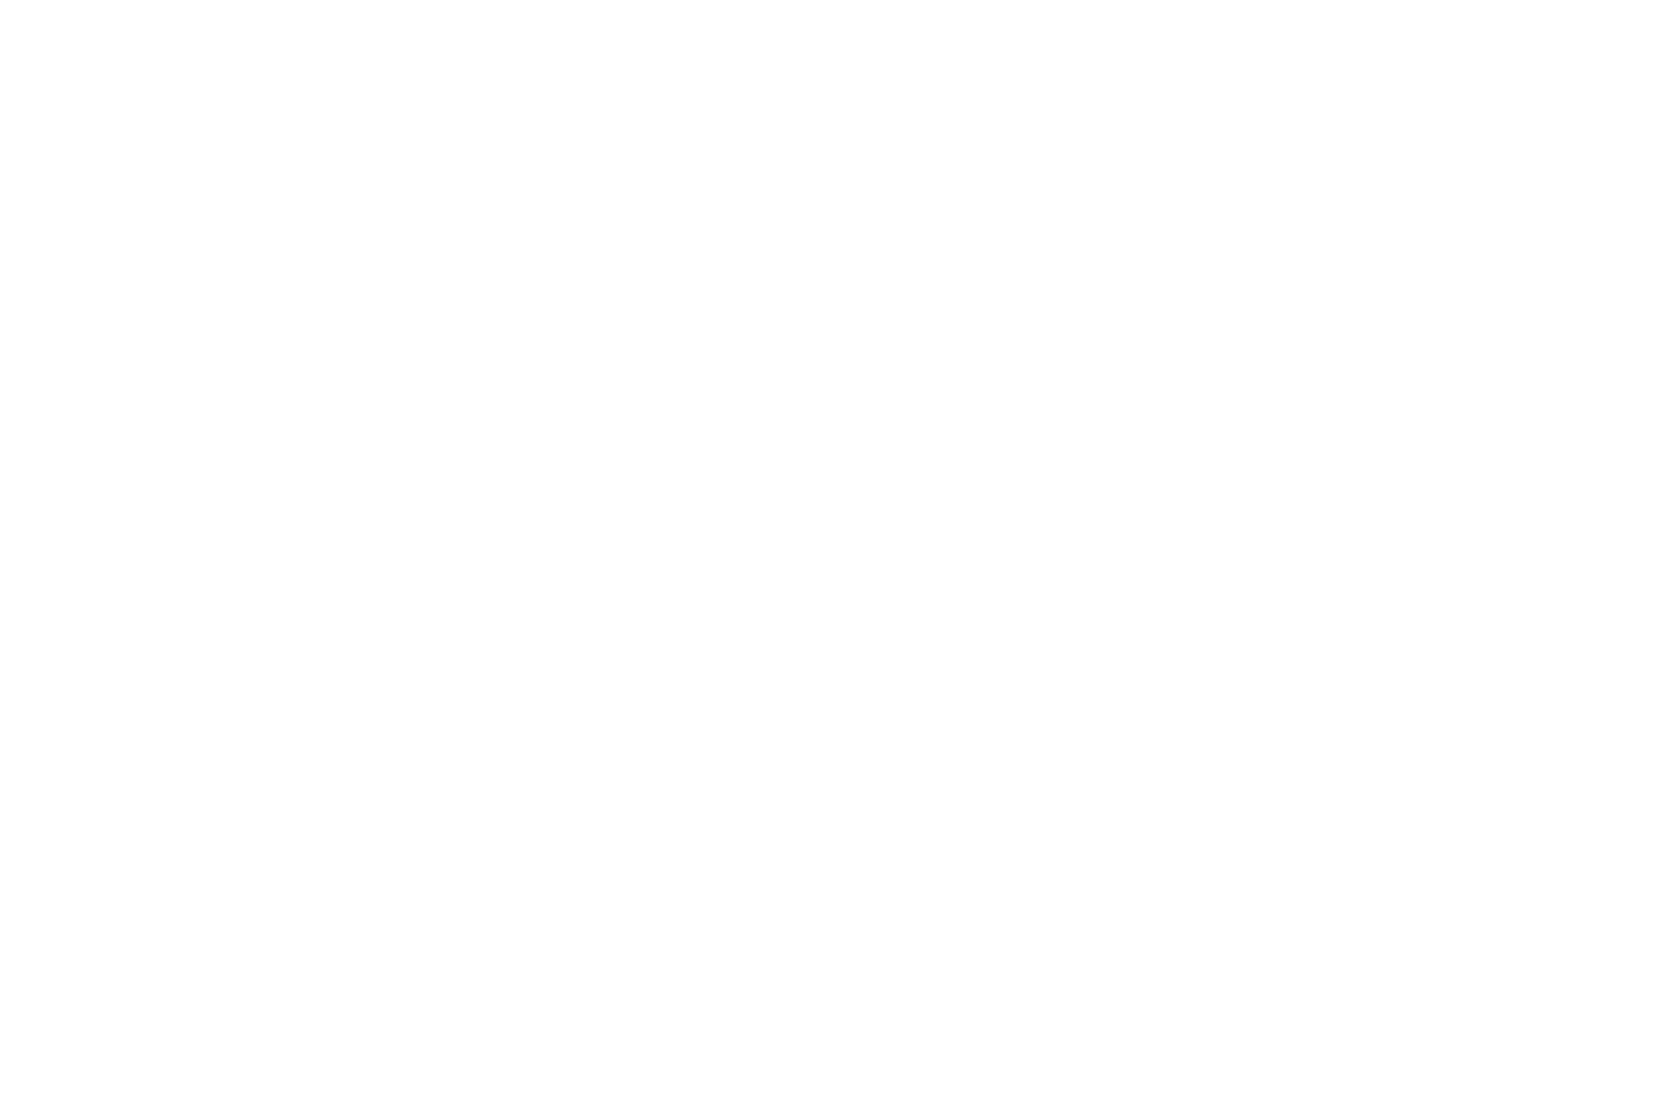 Пример логотипа, разработанного для софтверной компании для портфолио веб дизайнера